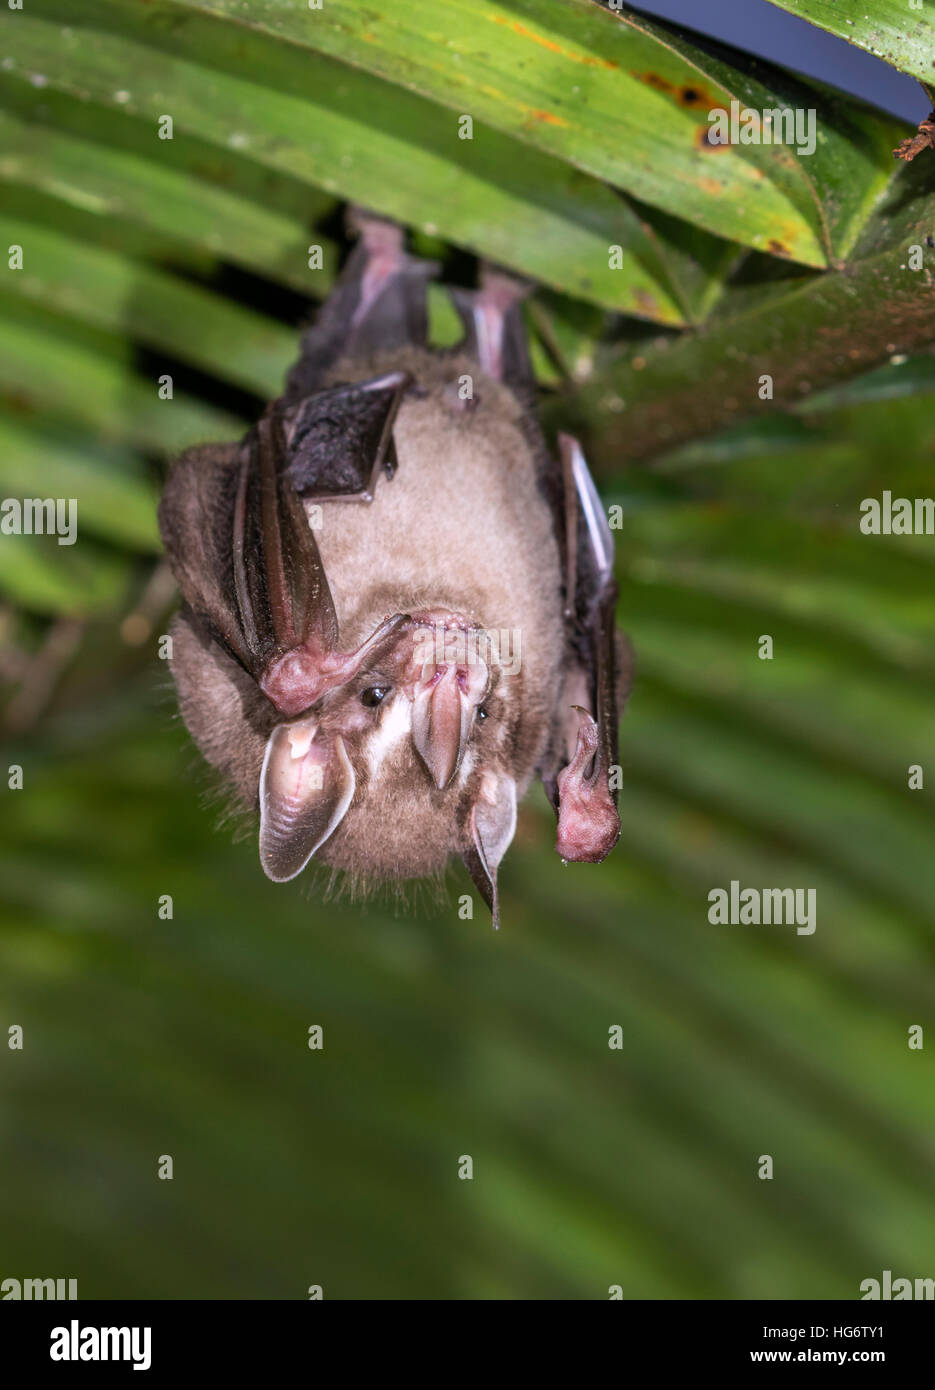 Los pigmeos de comer fruta (murciélago Dermanura phaeotis o Artibeus) posados en hoja de palma en la selva, Belice, Centroamérica Foto de stock